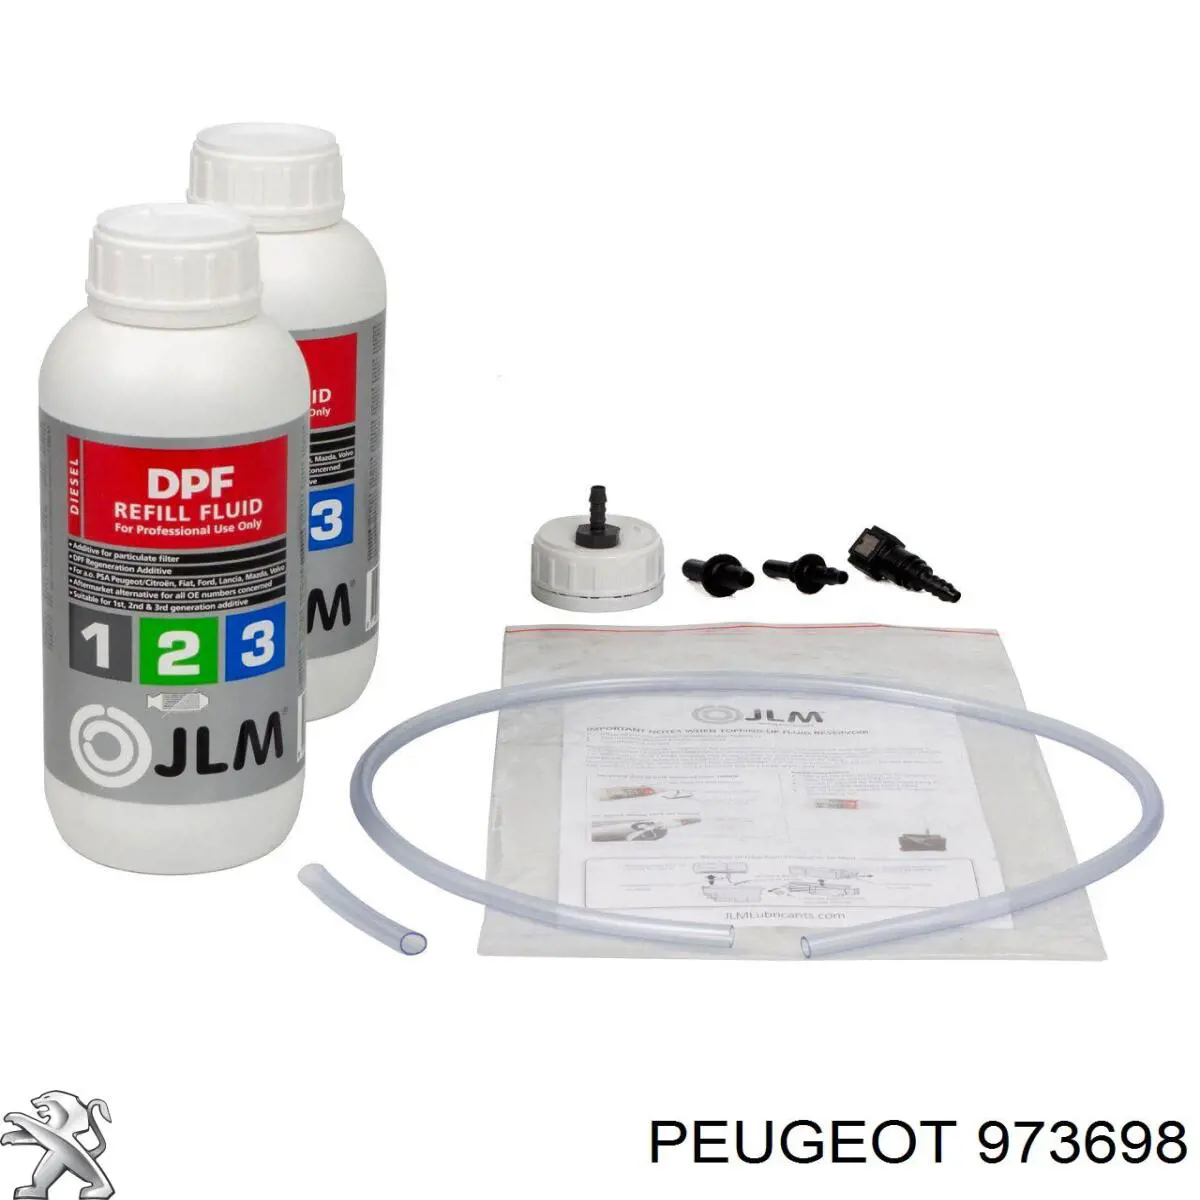 973698 Peugeot/Citroen liquido para filtros negros hollin